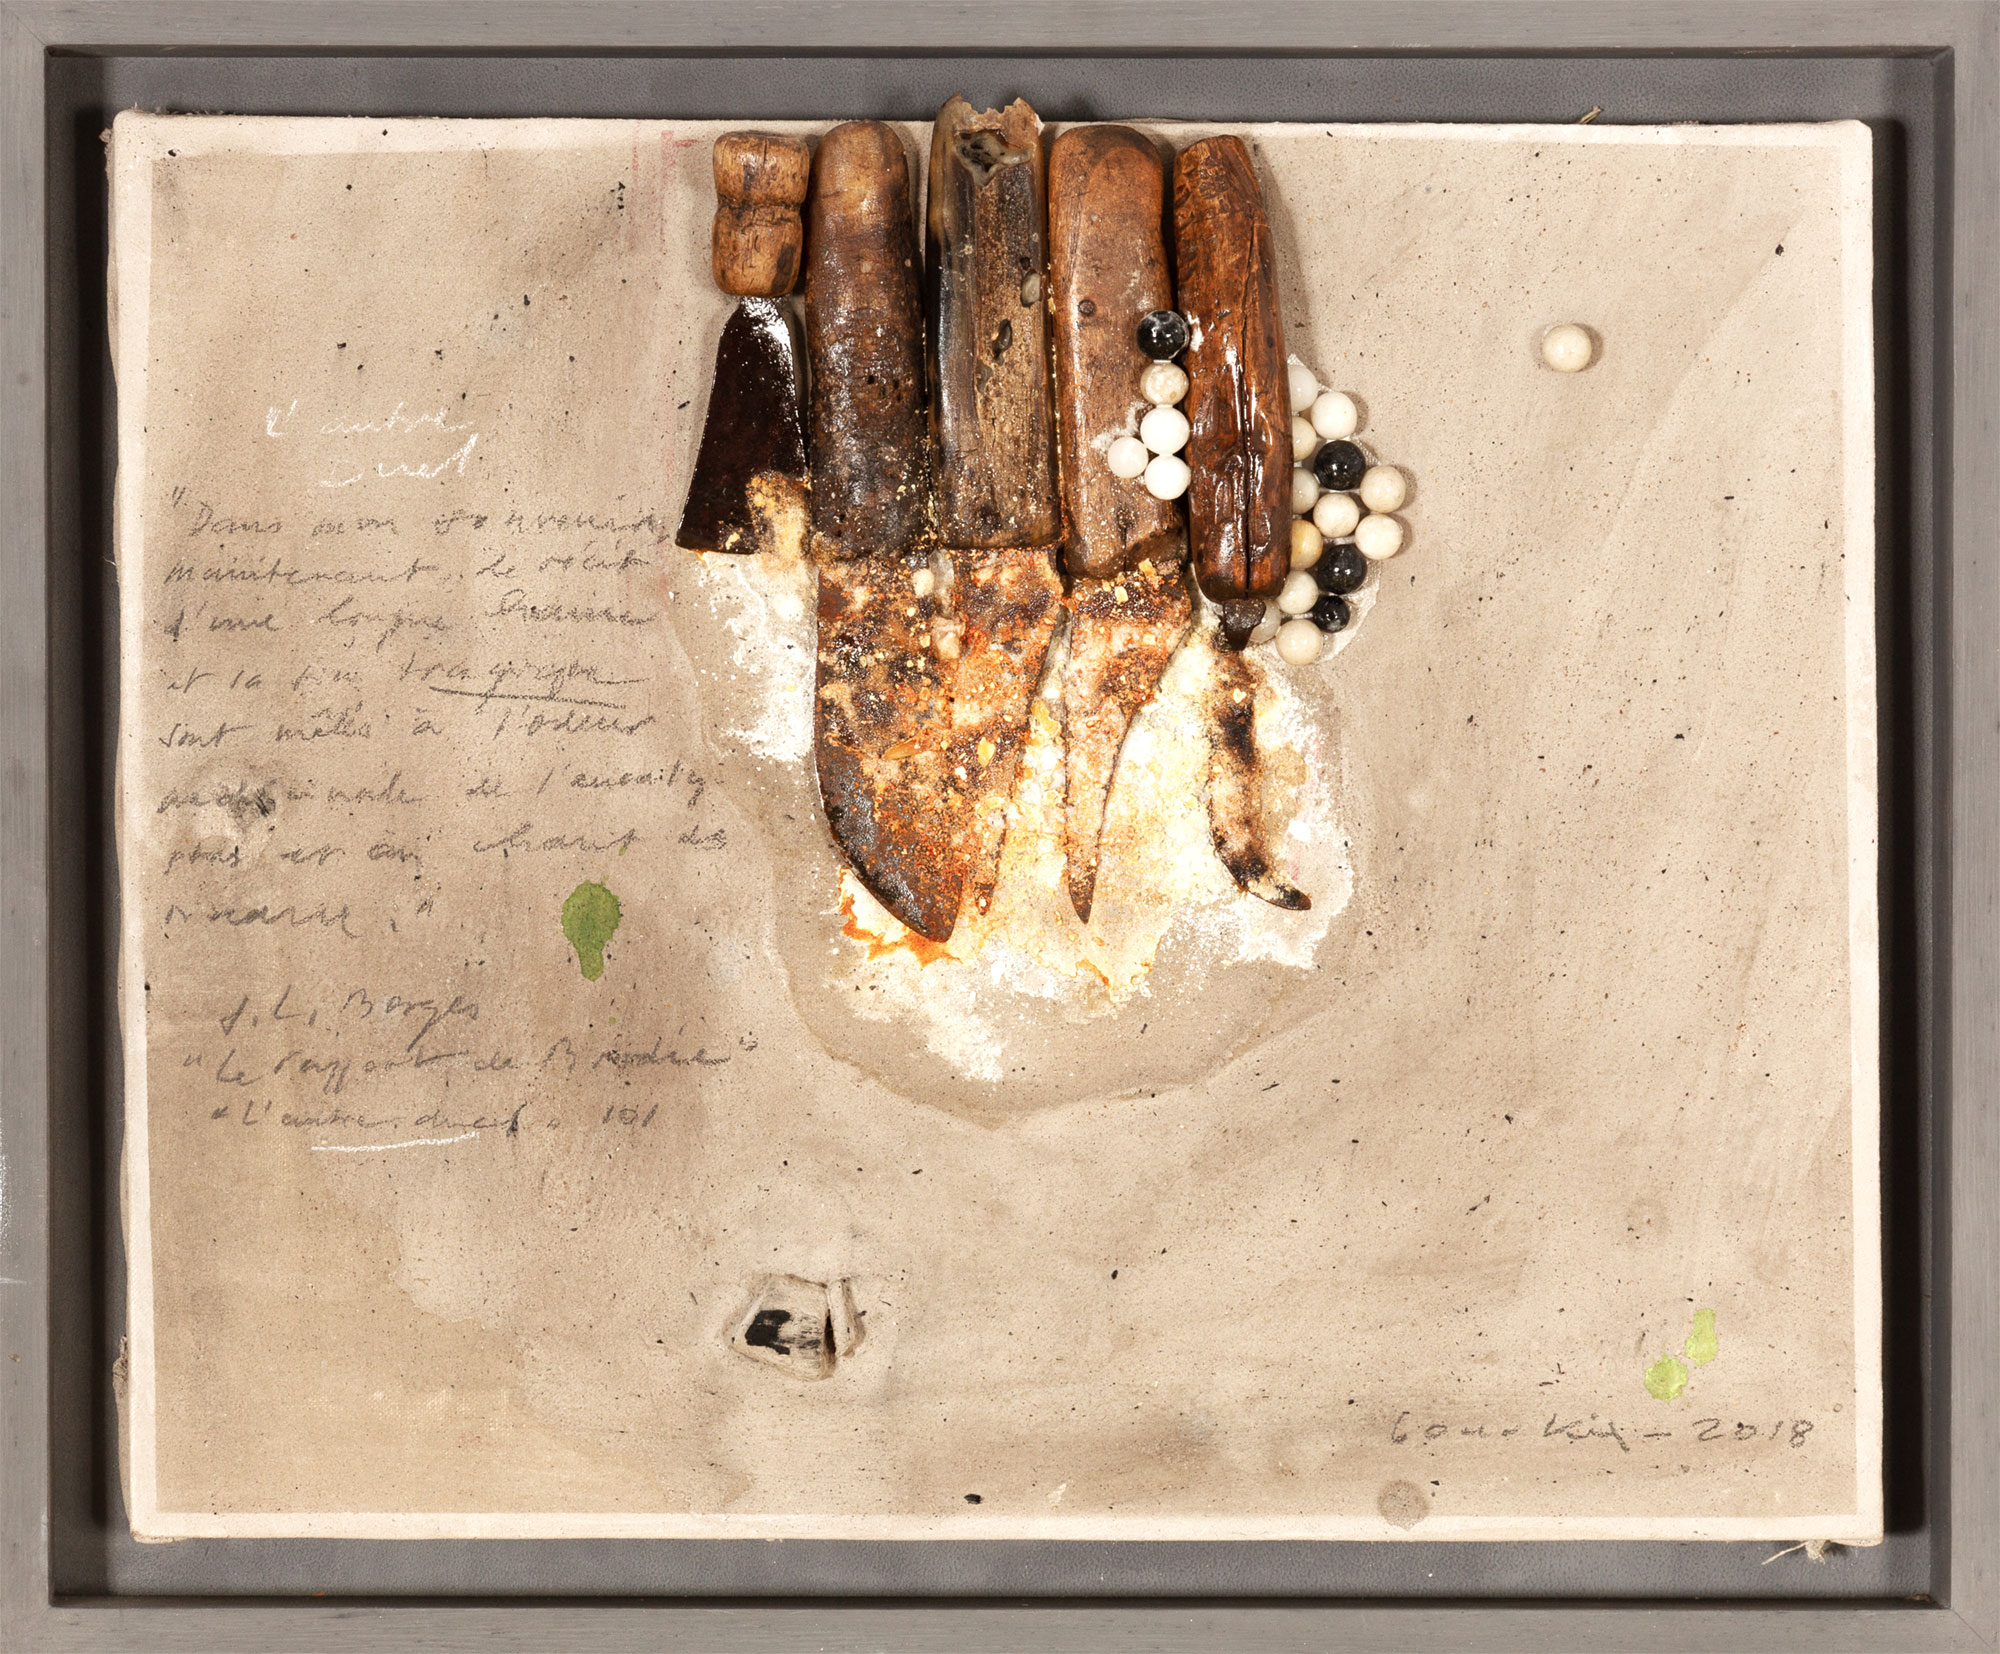 L’AUTRE DUEL , 2018 (Hommage à L. J. Borges) Technique mixte sur toile 41 x 50 cm
Signée et datée en bas à droite